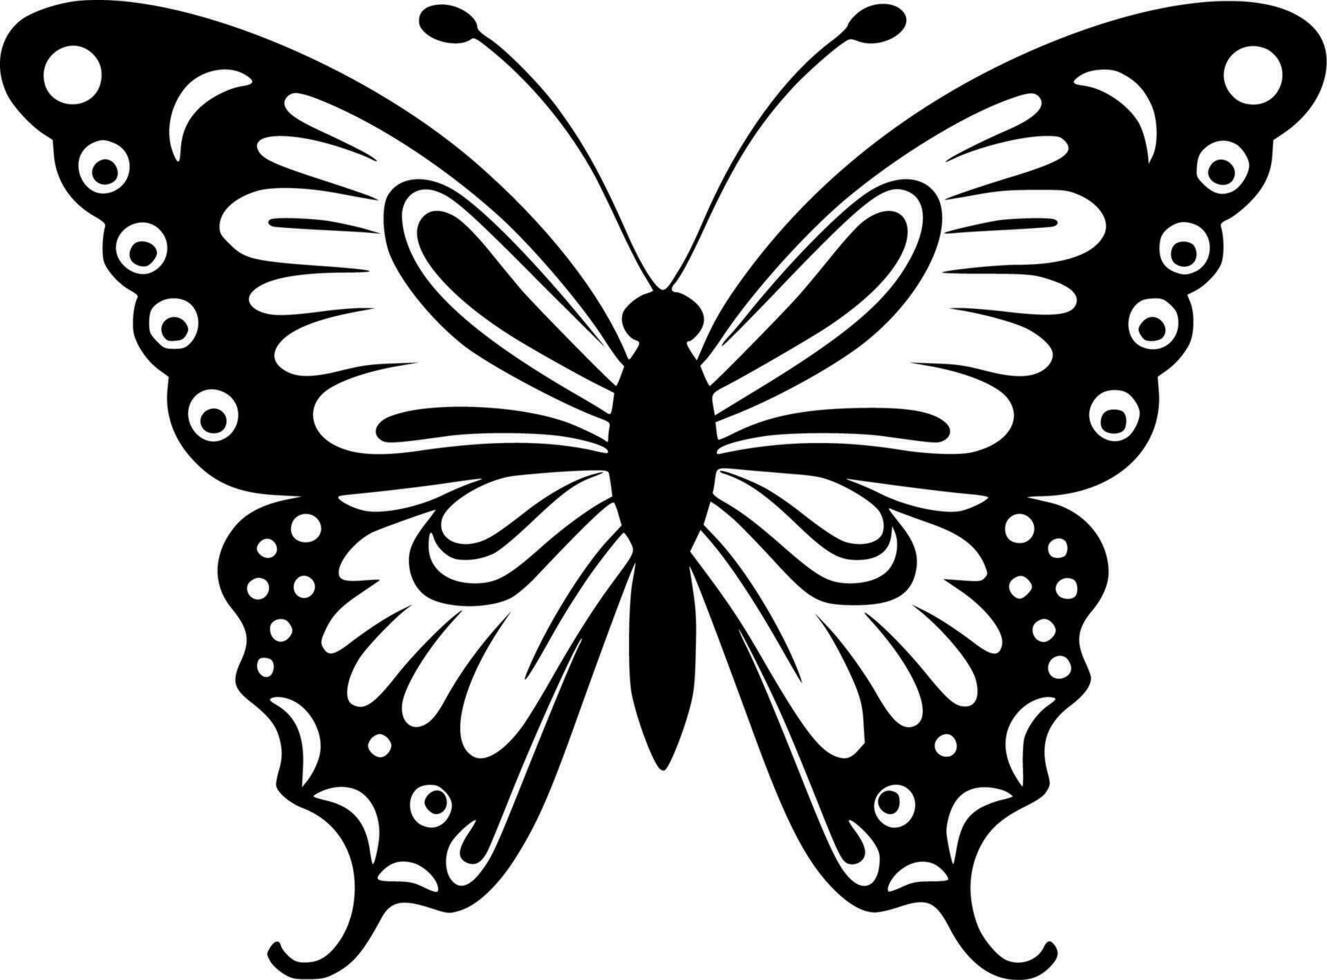 fjärilar - svart och vit isolerat ikon - vektor illustration